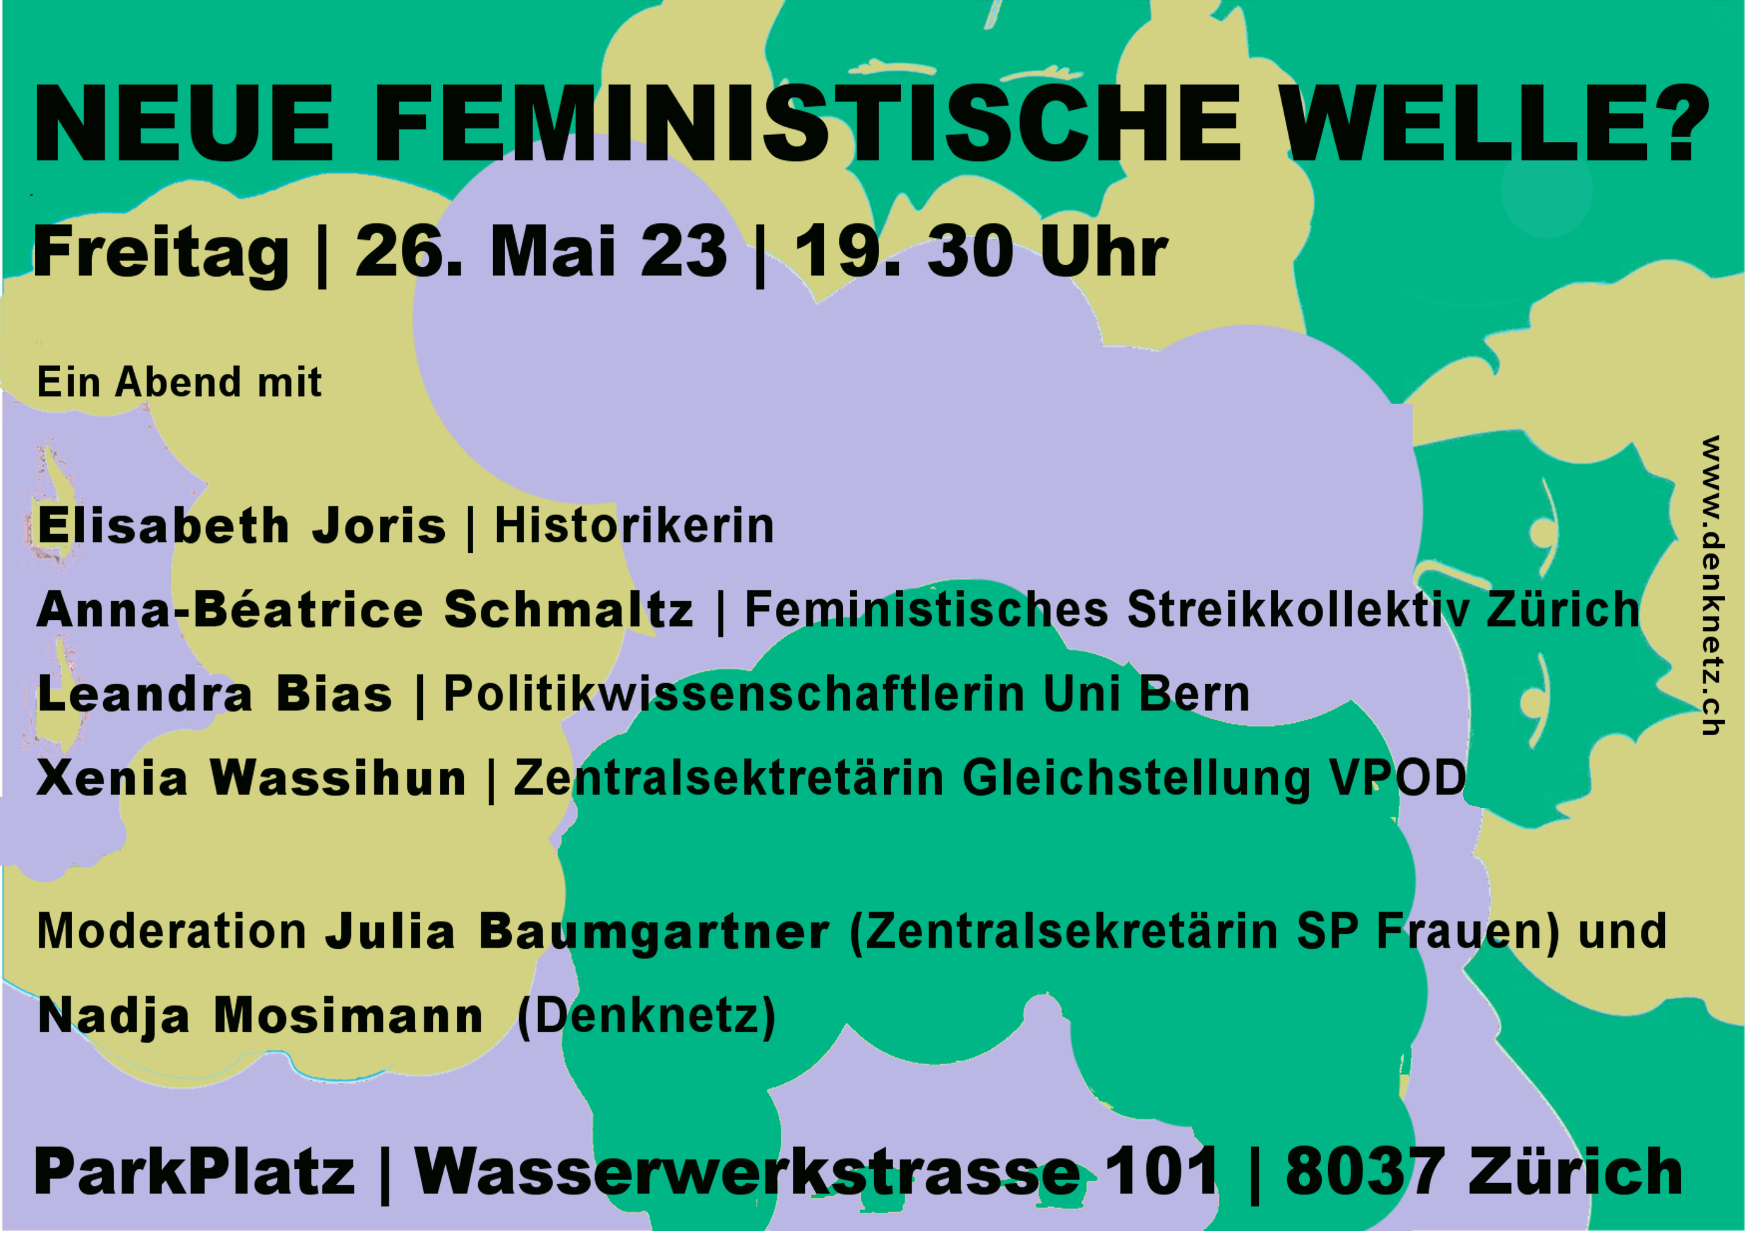 Der Flyer für die Veranstaltung mit den Infos dazu (siehe Agendaeintrag) auf einem Hintergrund aus grün, violett und olivegrün der wolkig köpfe darstellt